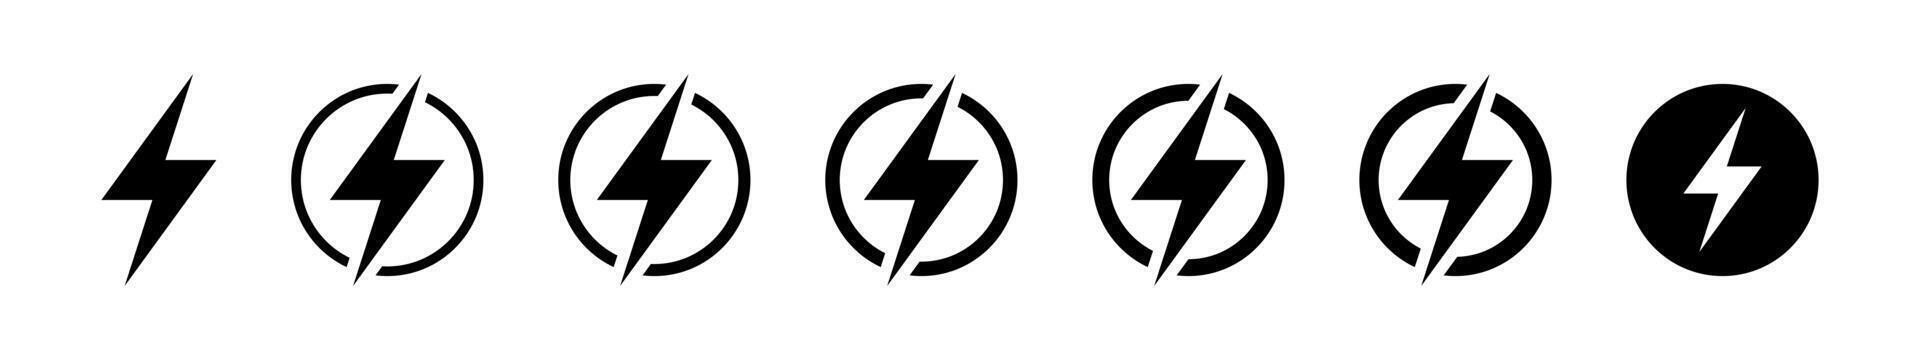 Blitz, elektrisch Leistung Vektor Symbol. Energie und Donner Elektrizität Symbol. Blitz Bolzen Zeichen im das Kreis. Leistung schnell Geschwindigkeit Logotyp.